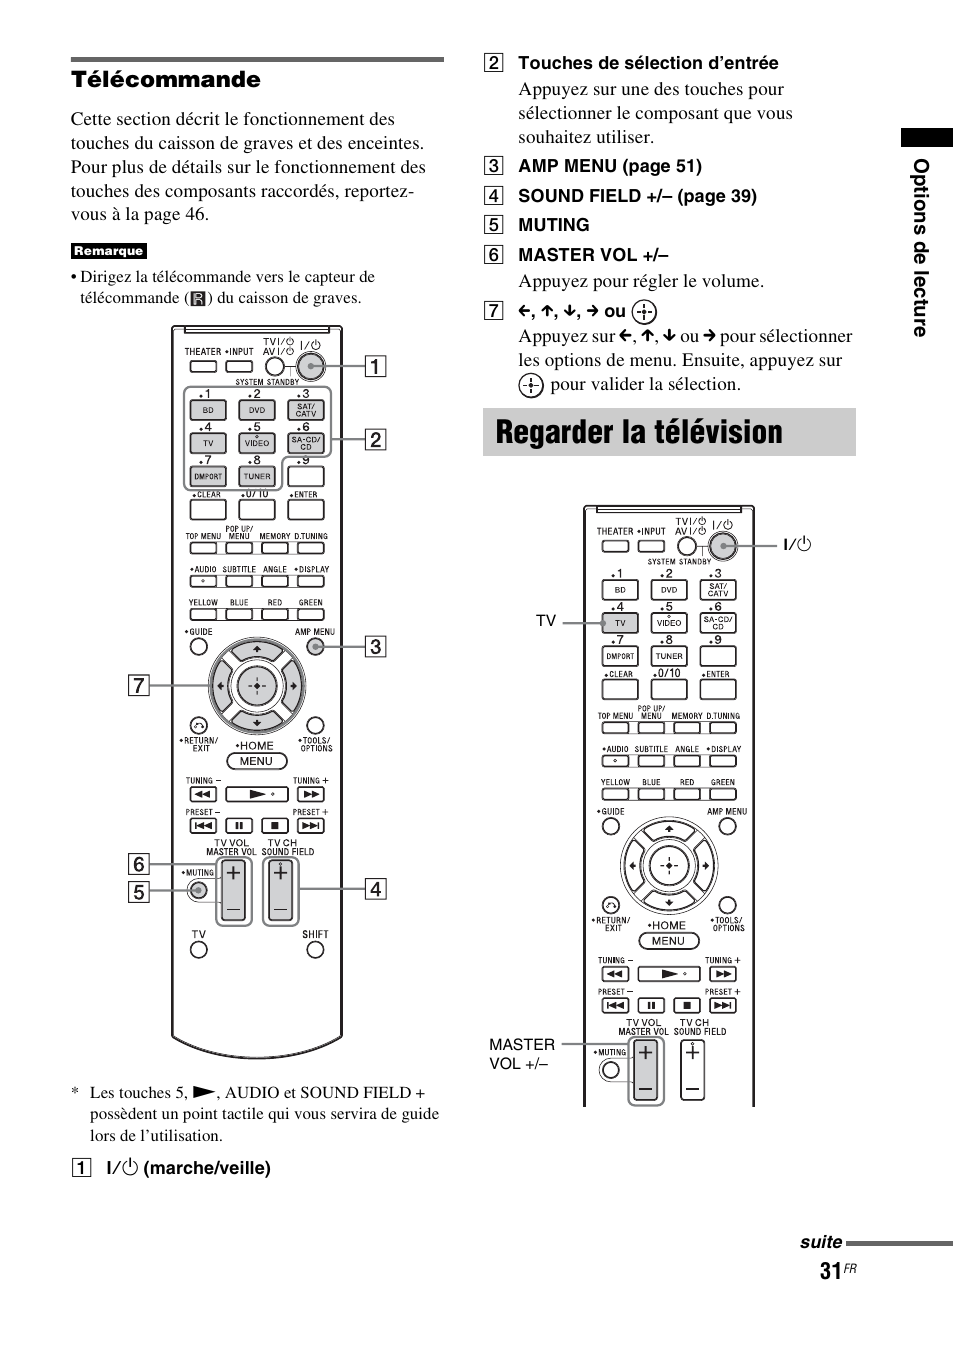 Regarder la télévision, Télécommande | Sony HT-CT350 User Manual | Page 87 / 180